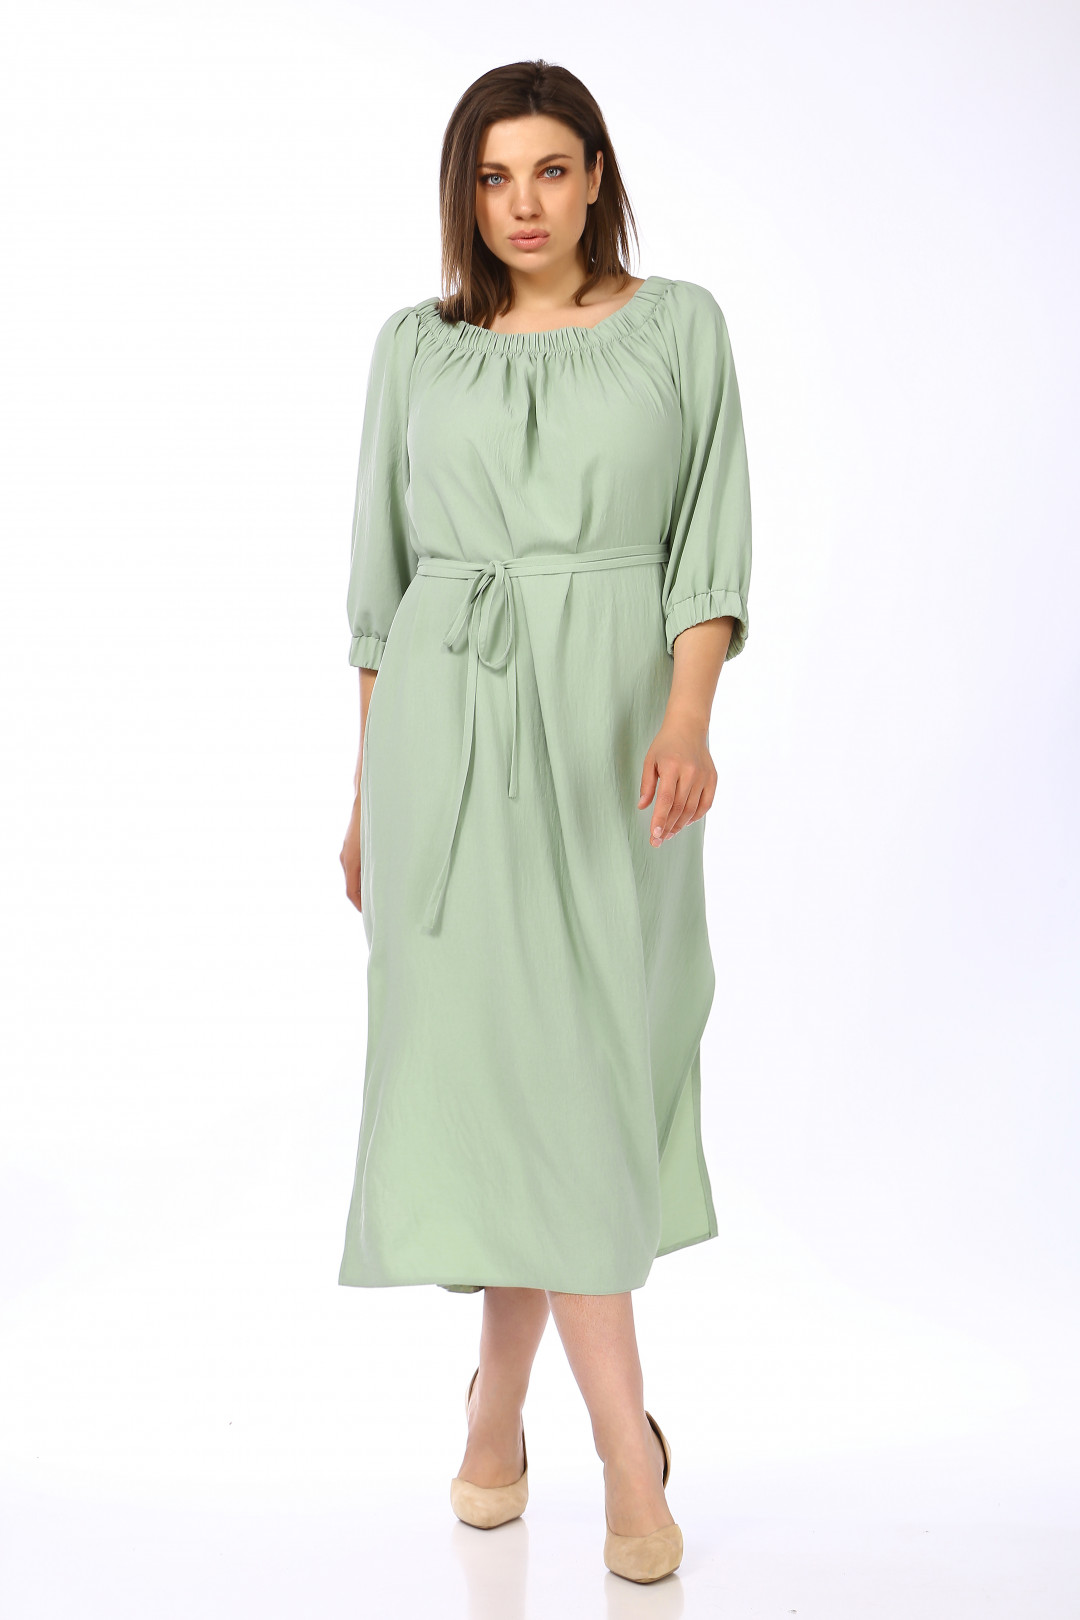 Платье LadySecret 3703 зеленые тона